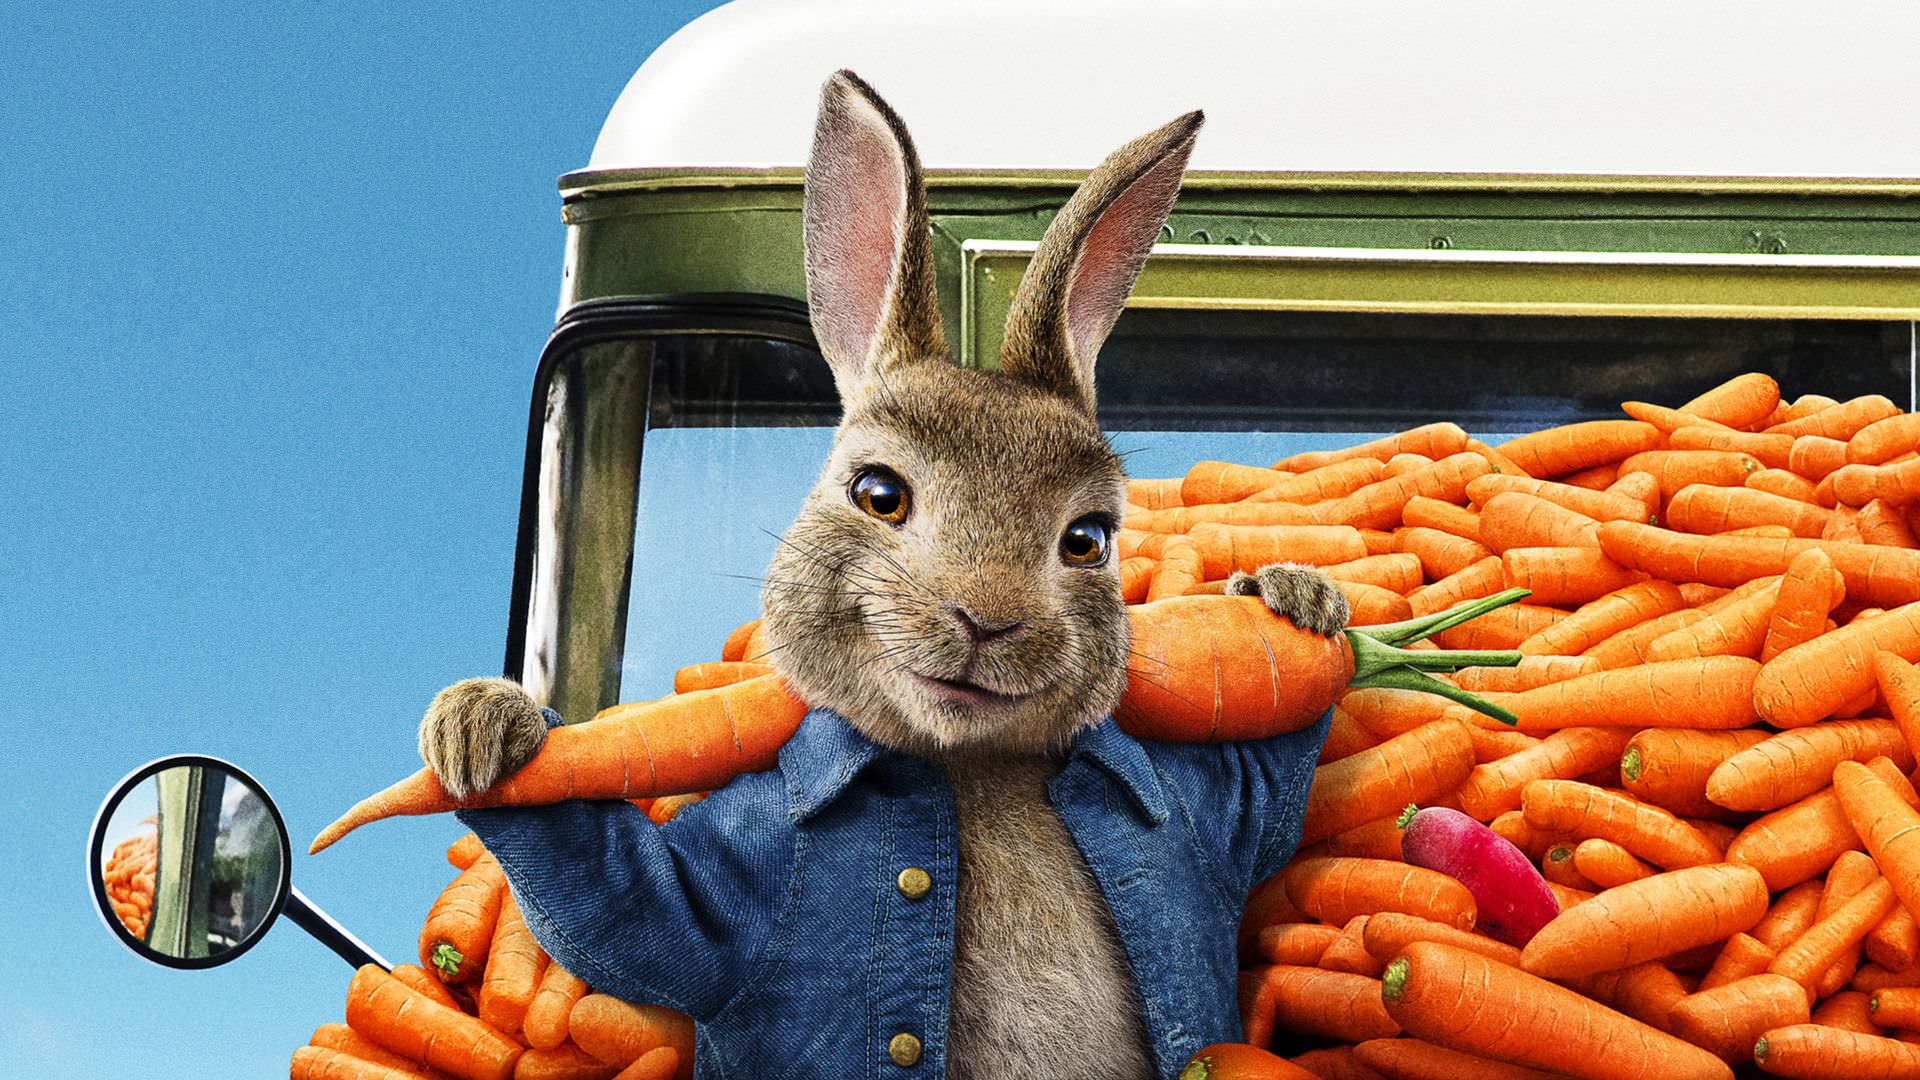 بازگشت خرگوش های دوست داشتنی در تریلر جدید فیلم Peter Rabbit 2 ؛ تغییر دوباره تاریخ اکران